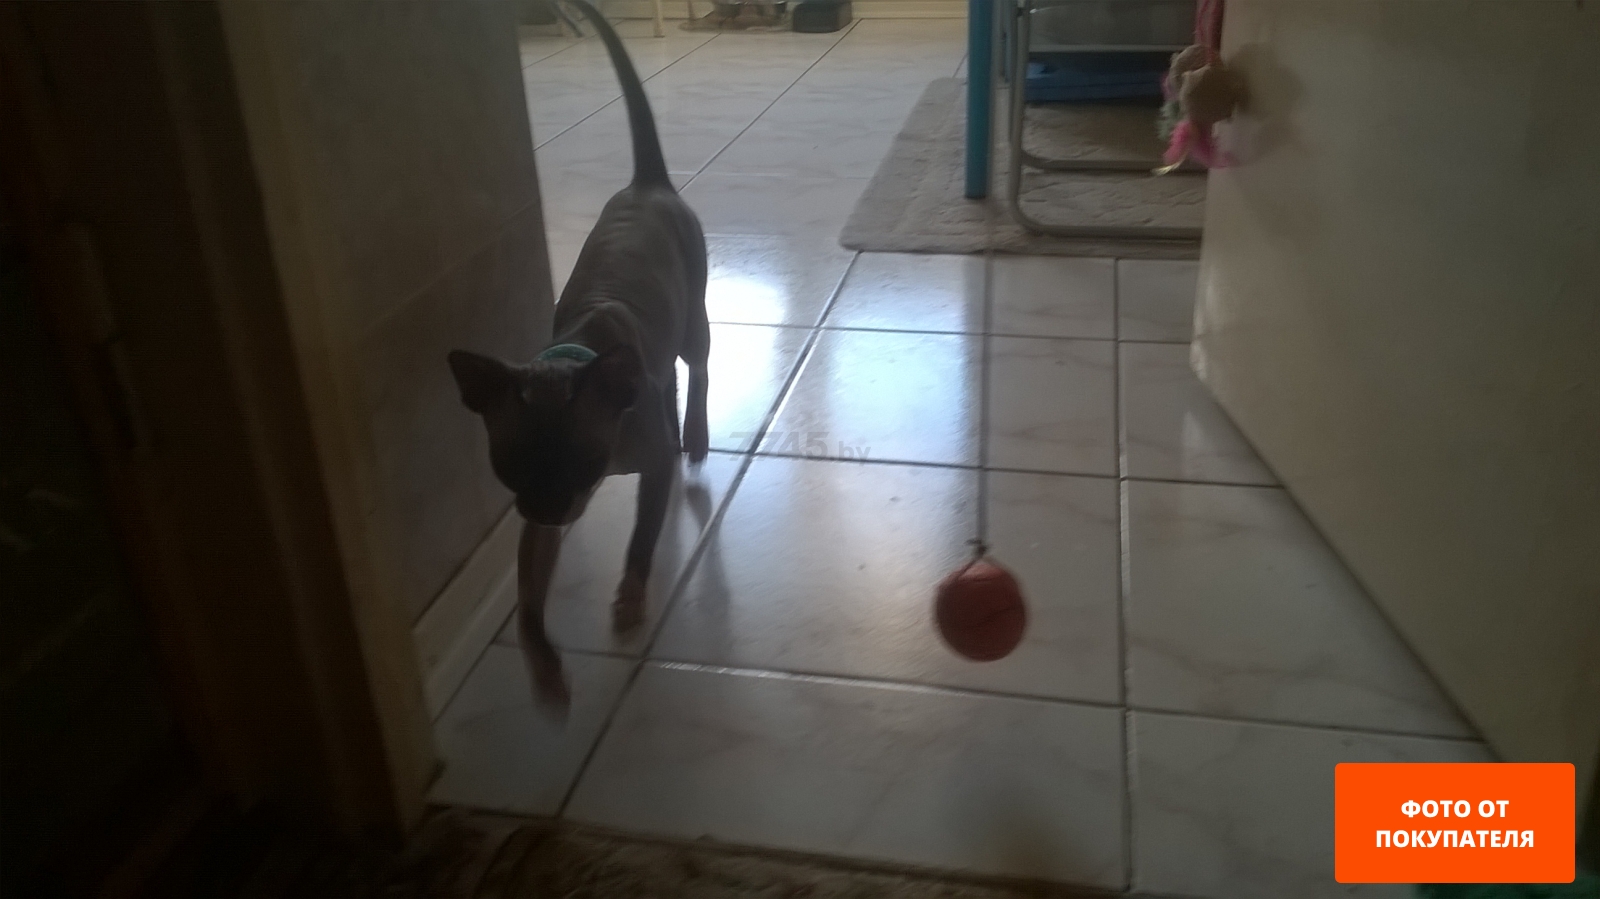 Игрушка для кошек TRIXIE Мячик из поролона двухцветный d 4,3 см (41101) - Фото 3